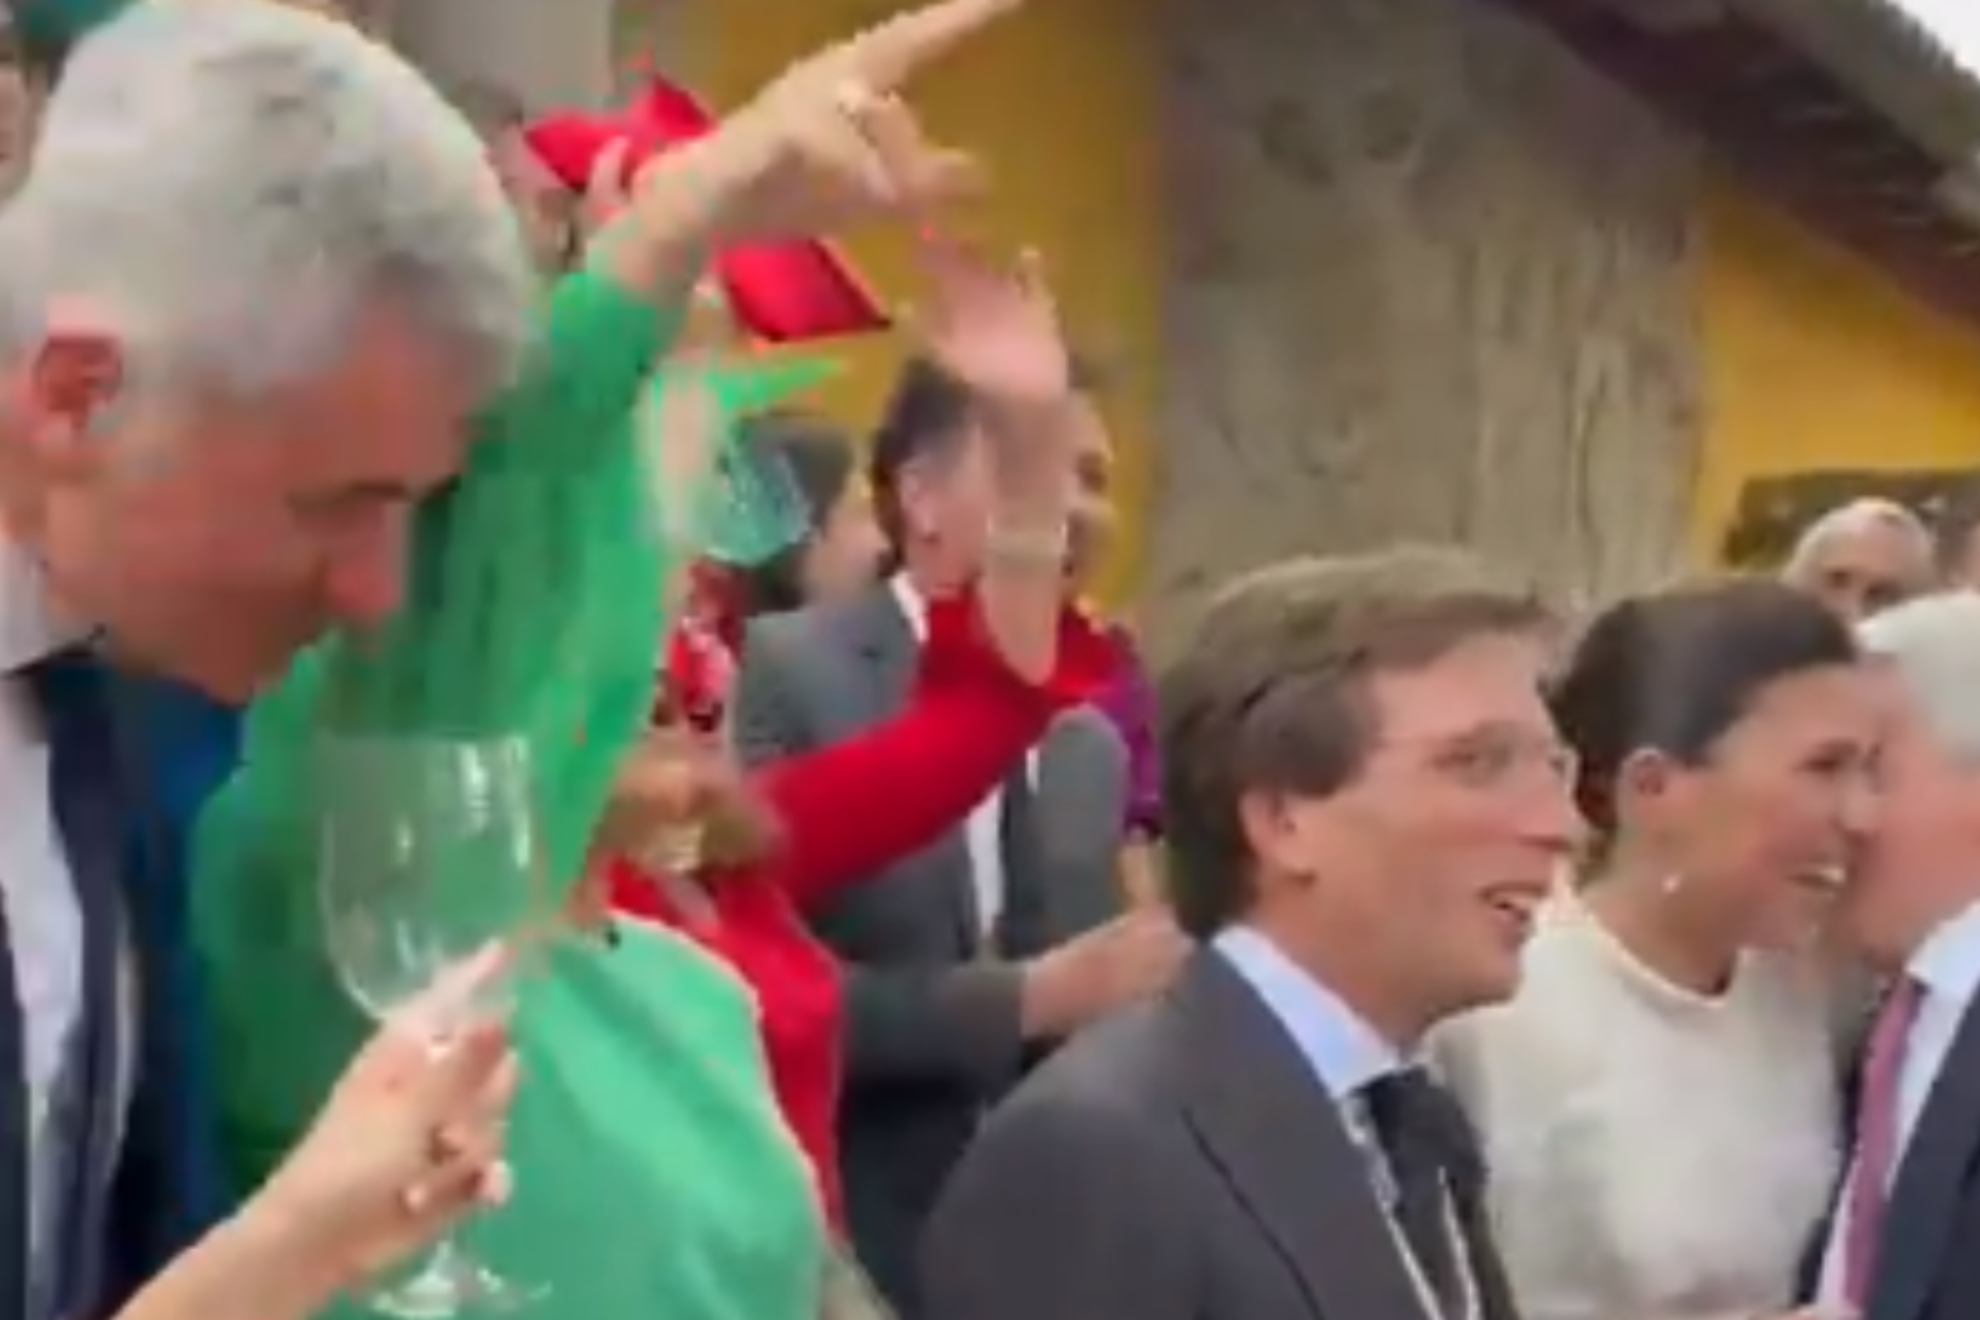 El momentazo viral de Almeida con Simeone, Cerezo y Gil Marn en su boda